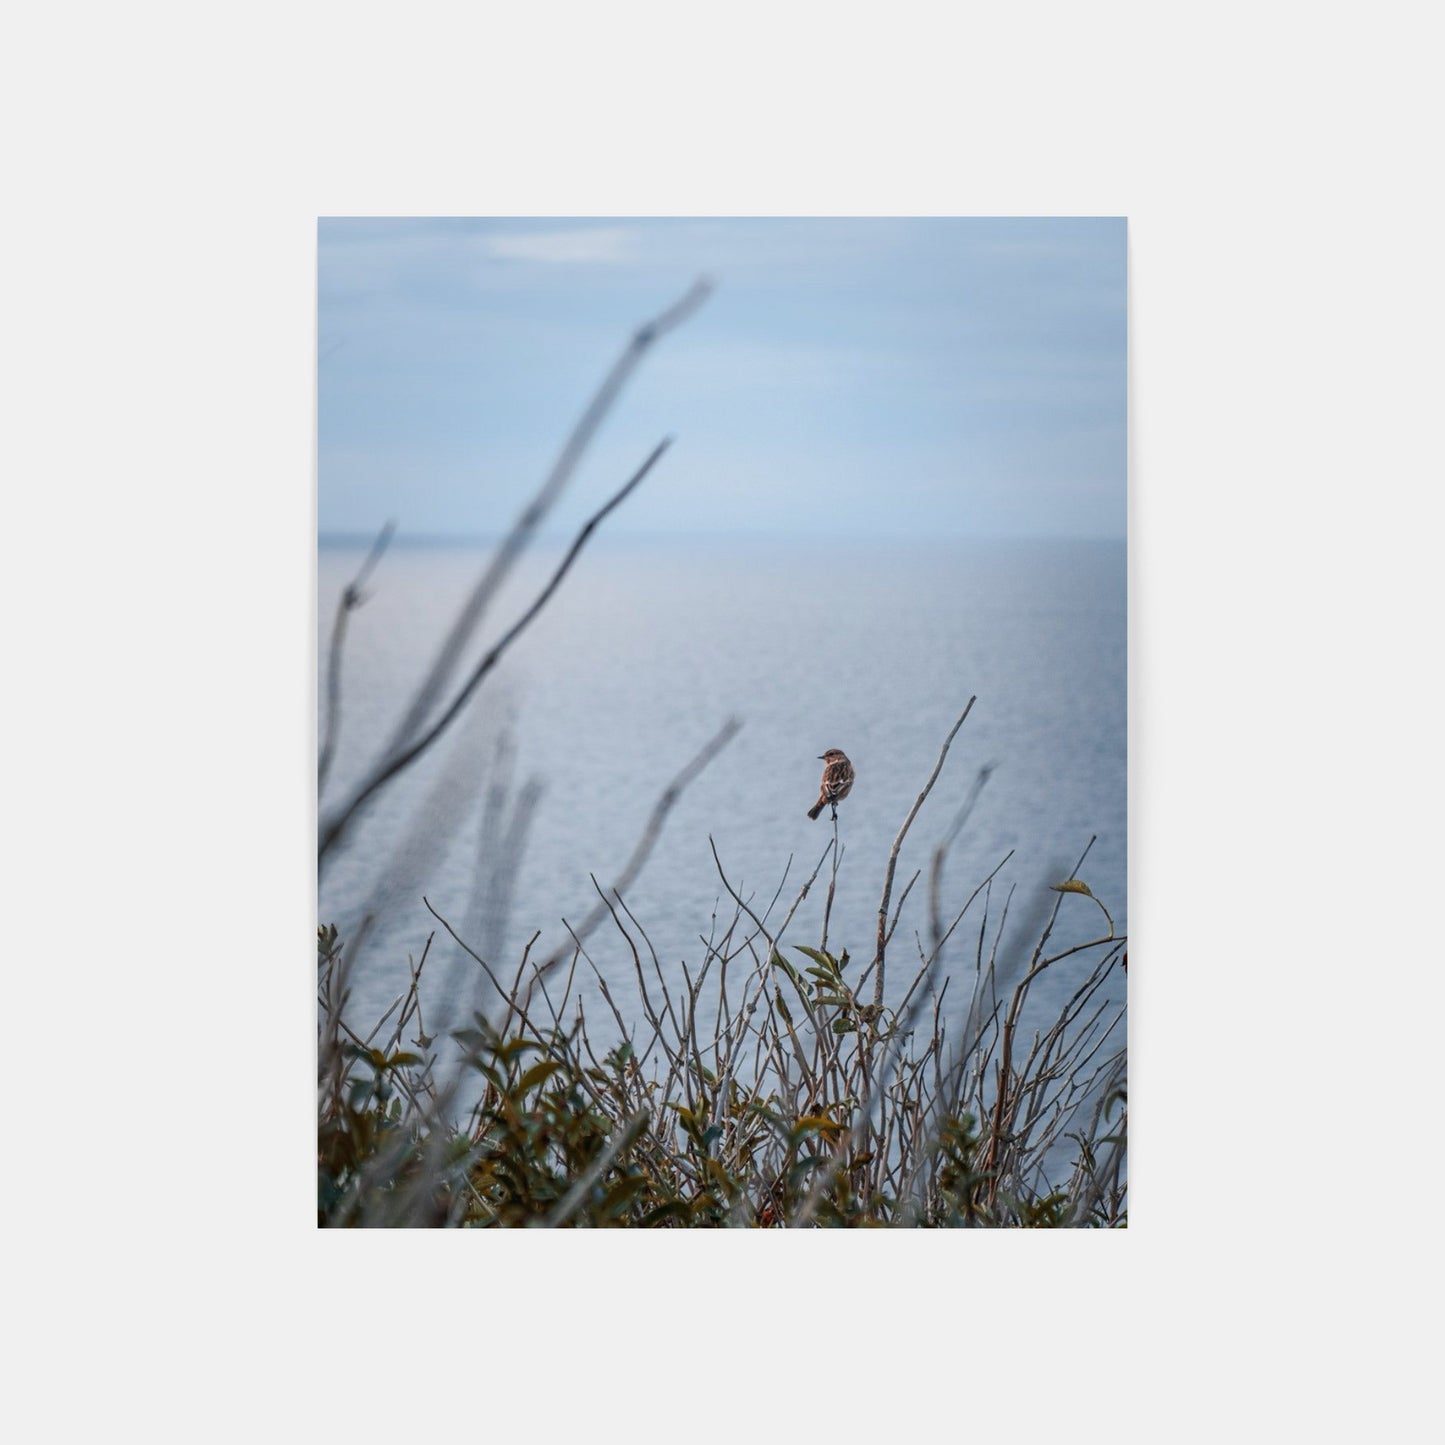 Ranní ptáče – Lulworth, Dorset, Spojené království, 2021